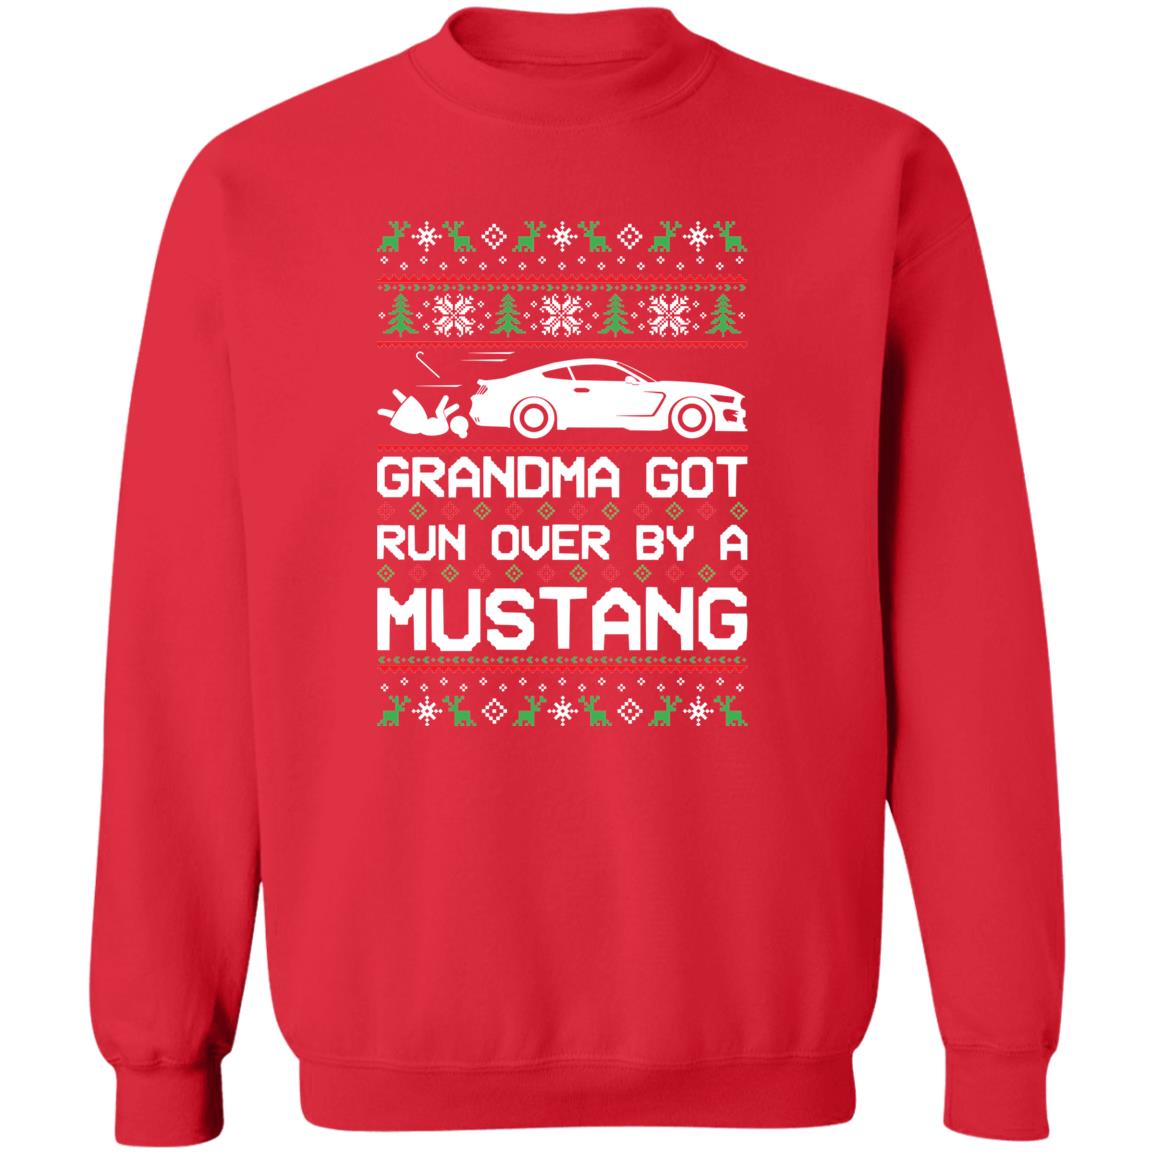 S550 Stang Coyote 5.0 Grandma Got Run Over Ugly Christmas Funny Crewneck Sweatshirt